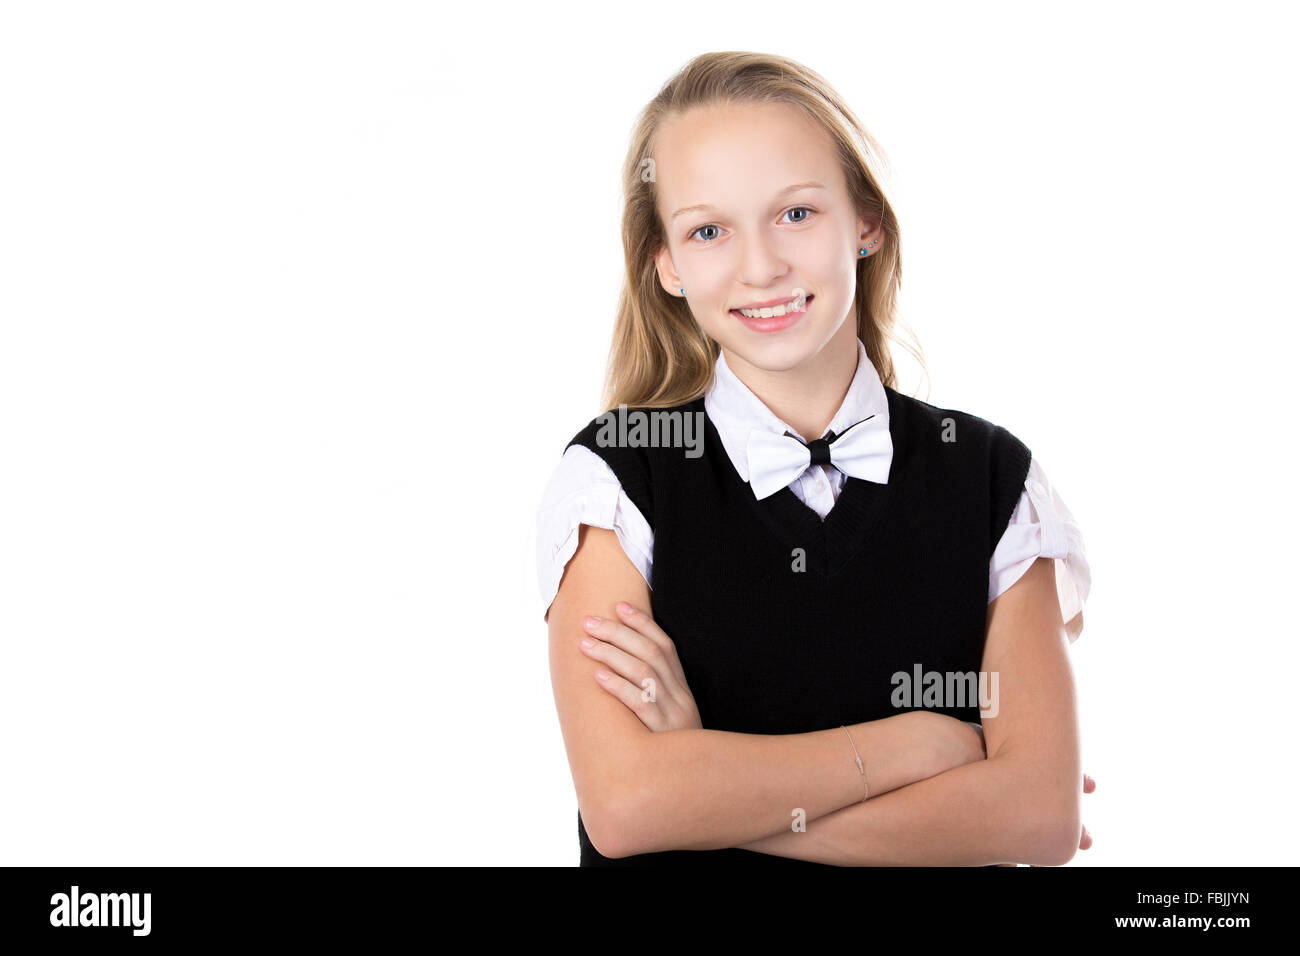 Porträt von glücklich niedlich schöne blonde Schulmädchen tragen schwarze und weiße formale Outfit und Fliege um den Hals, Arme gefaltet Stockfoto